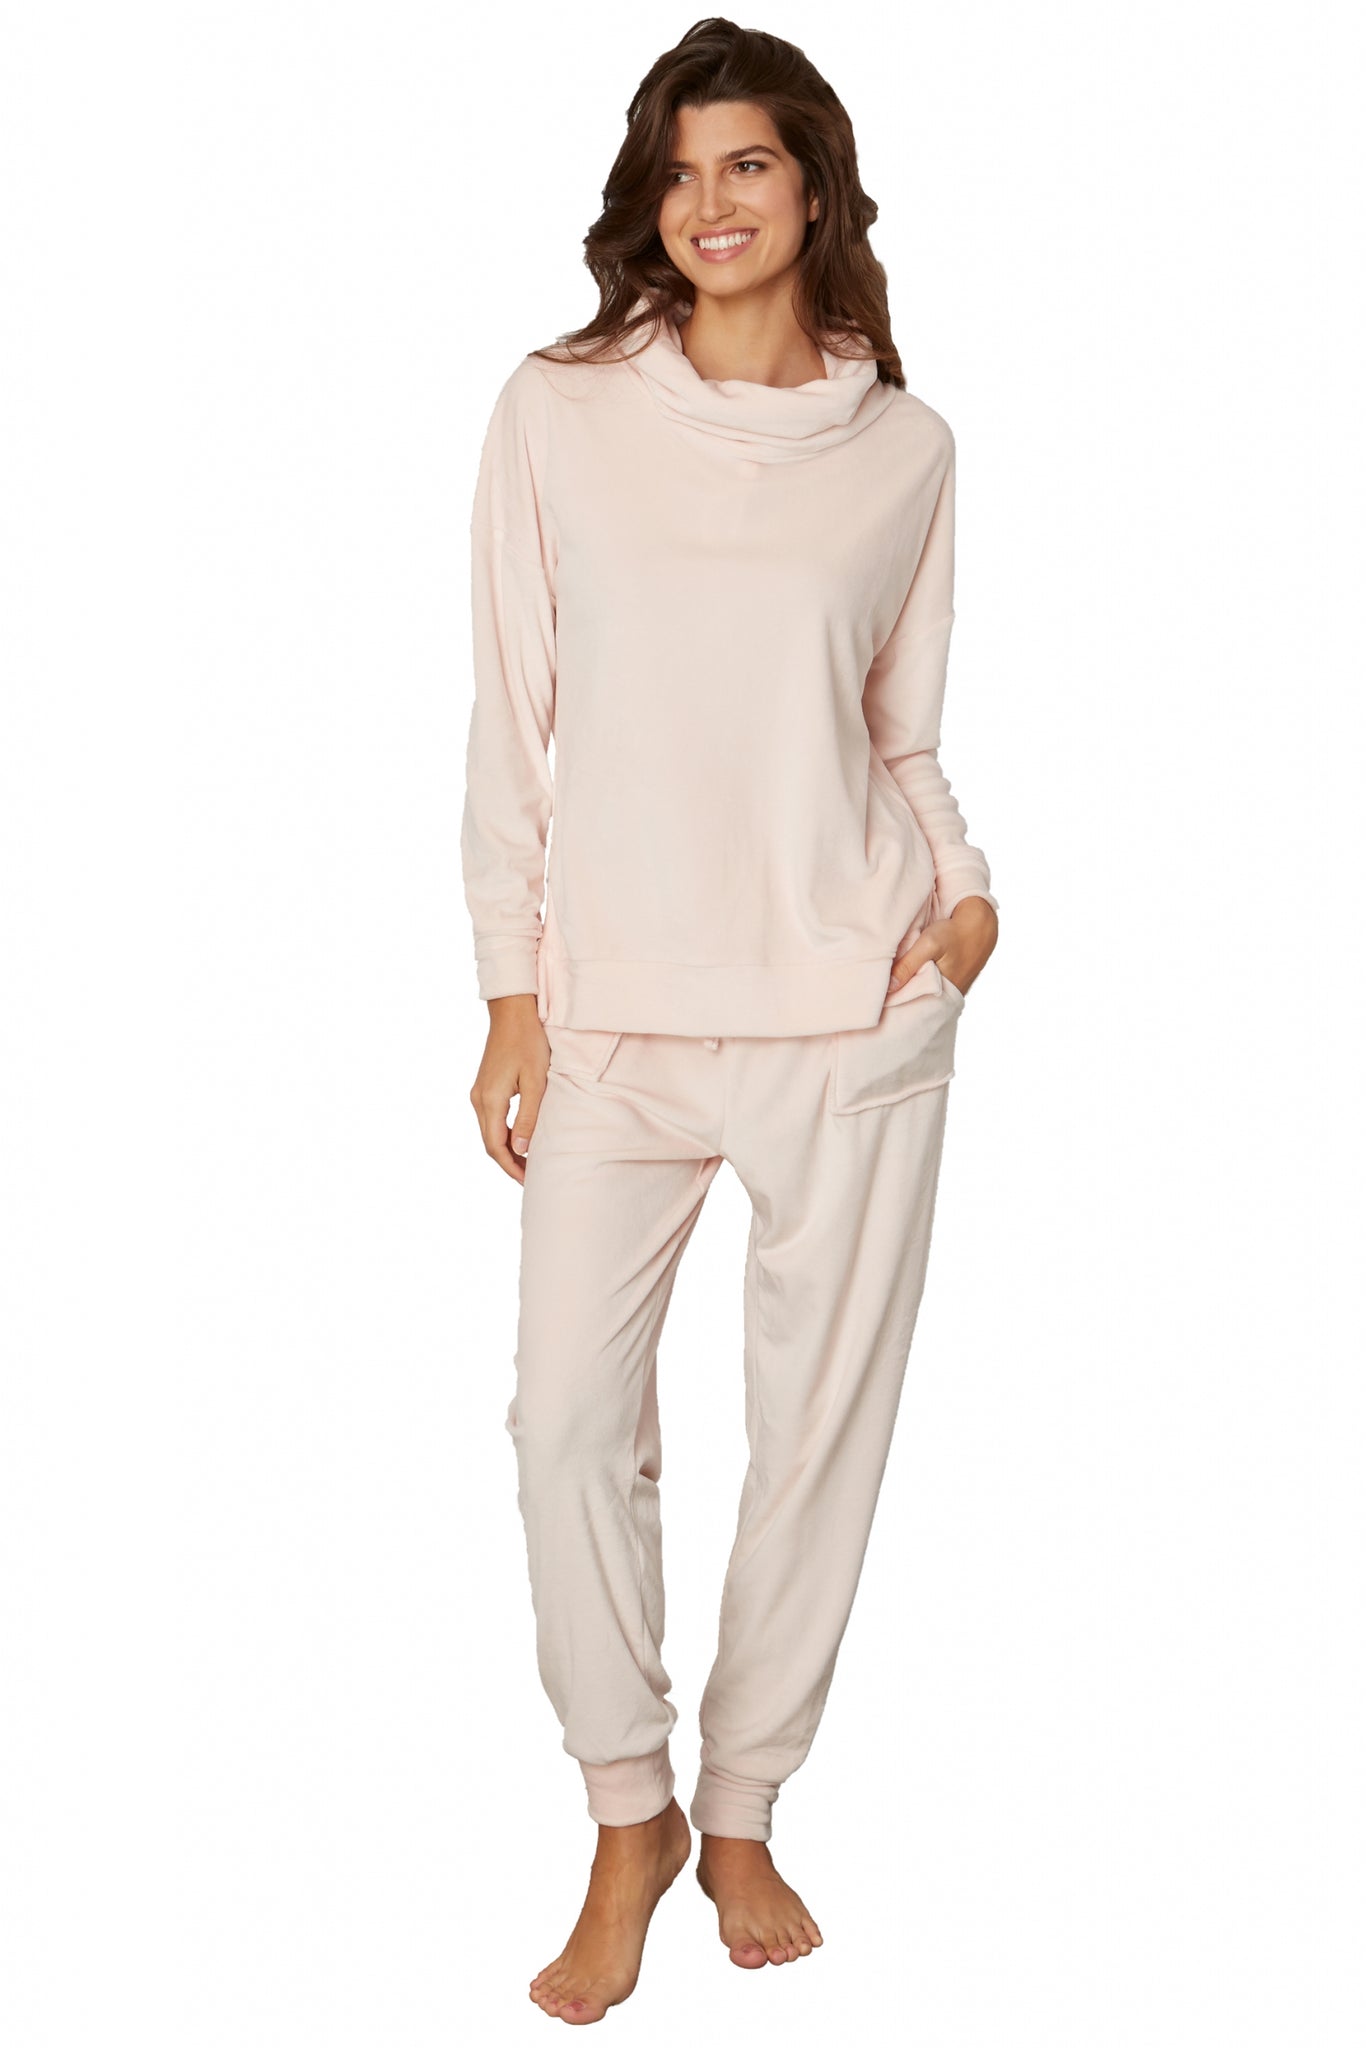 Super Soft Cowl-Neck Pajamas in Women's Fleece Pajamas, Pajamas for Women